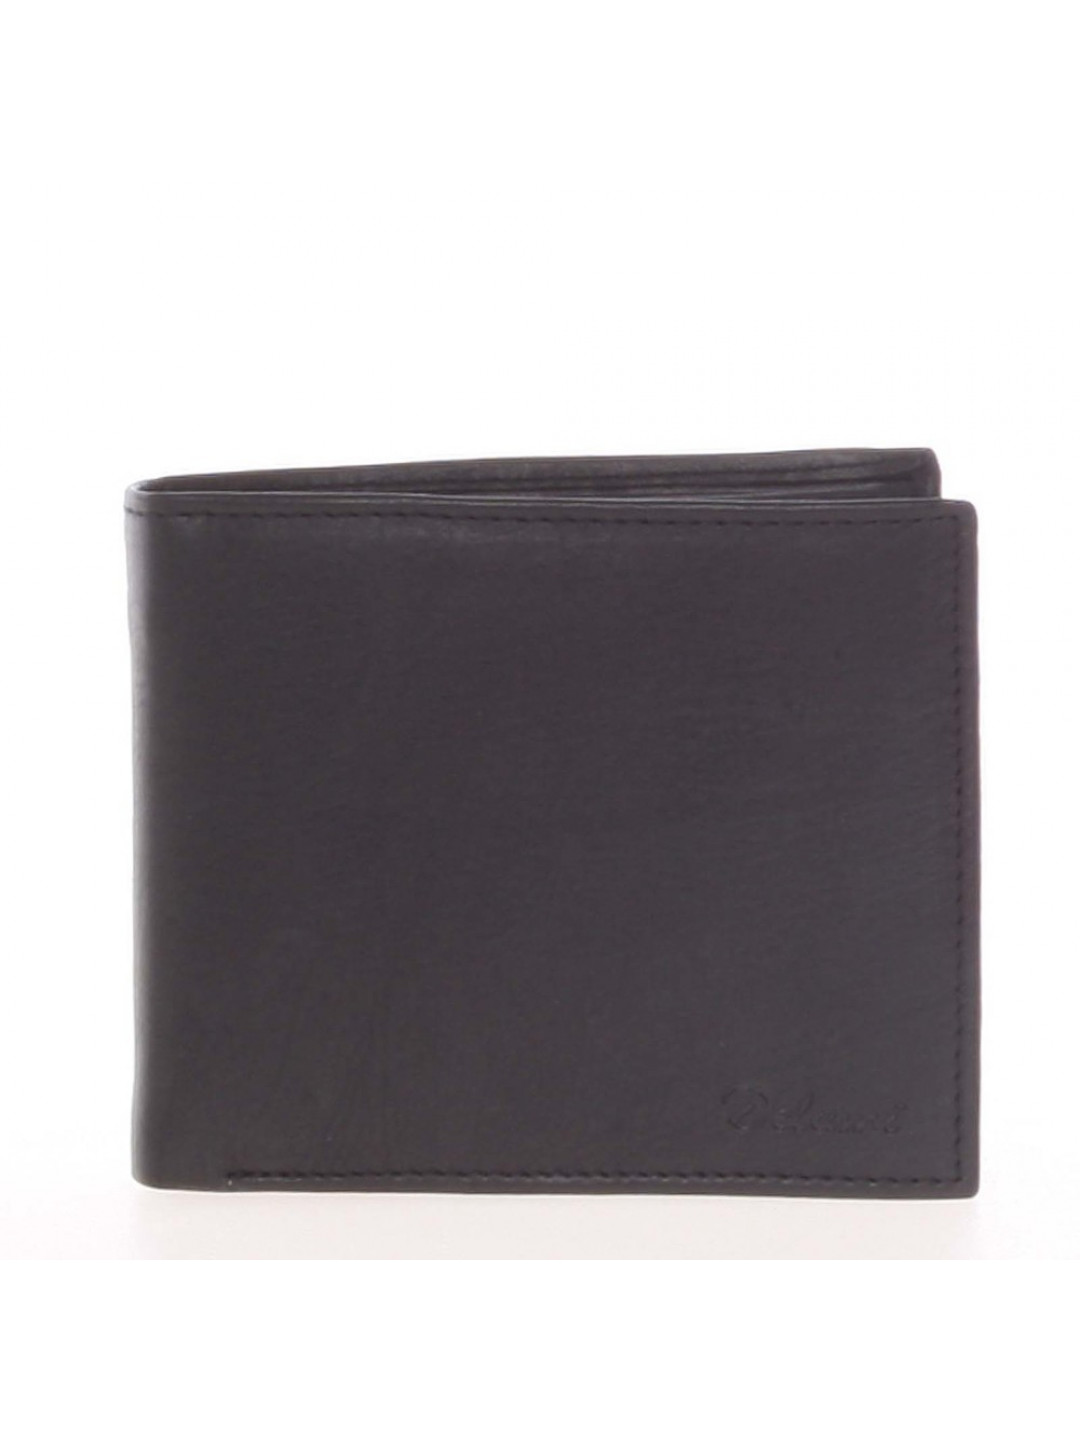 Kožená pánská peněženka Delami Rio černá